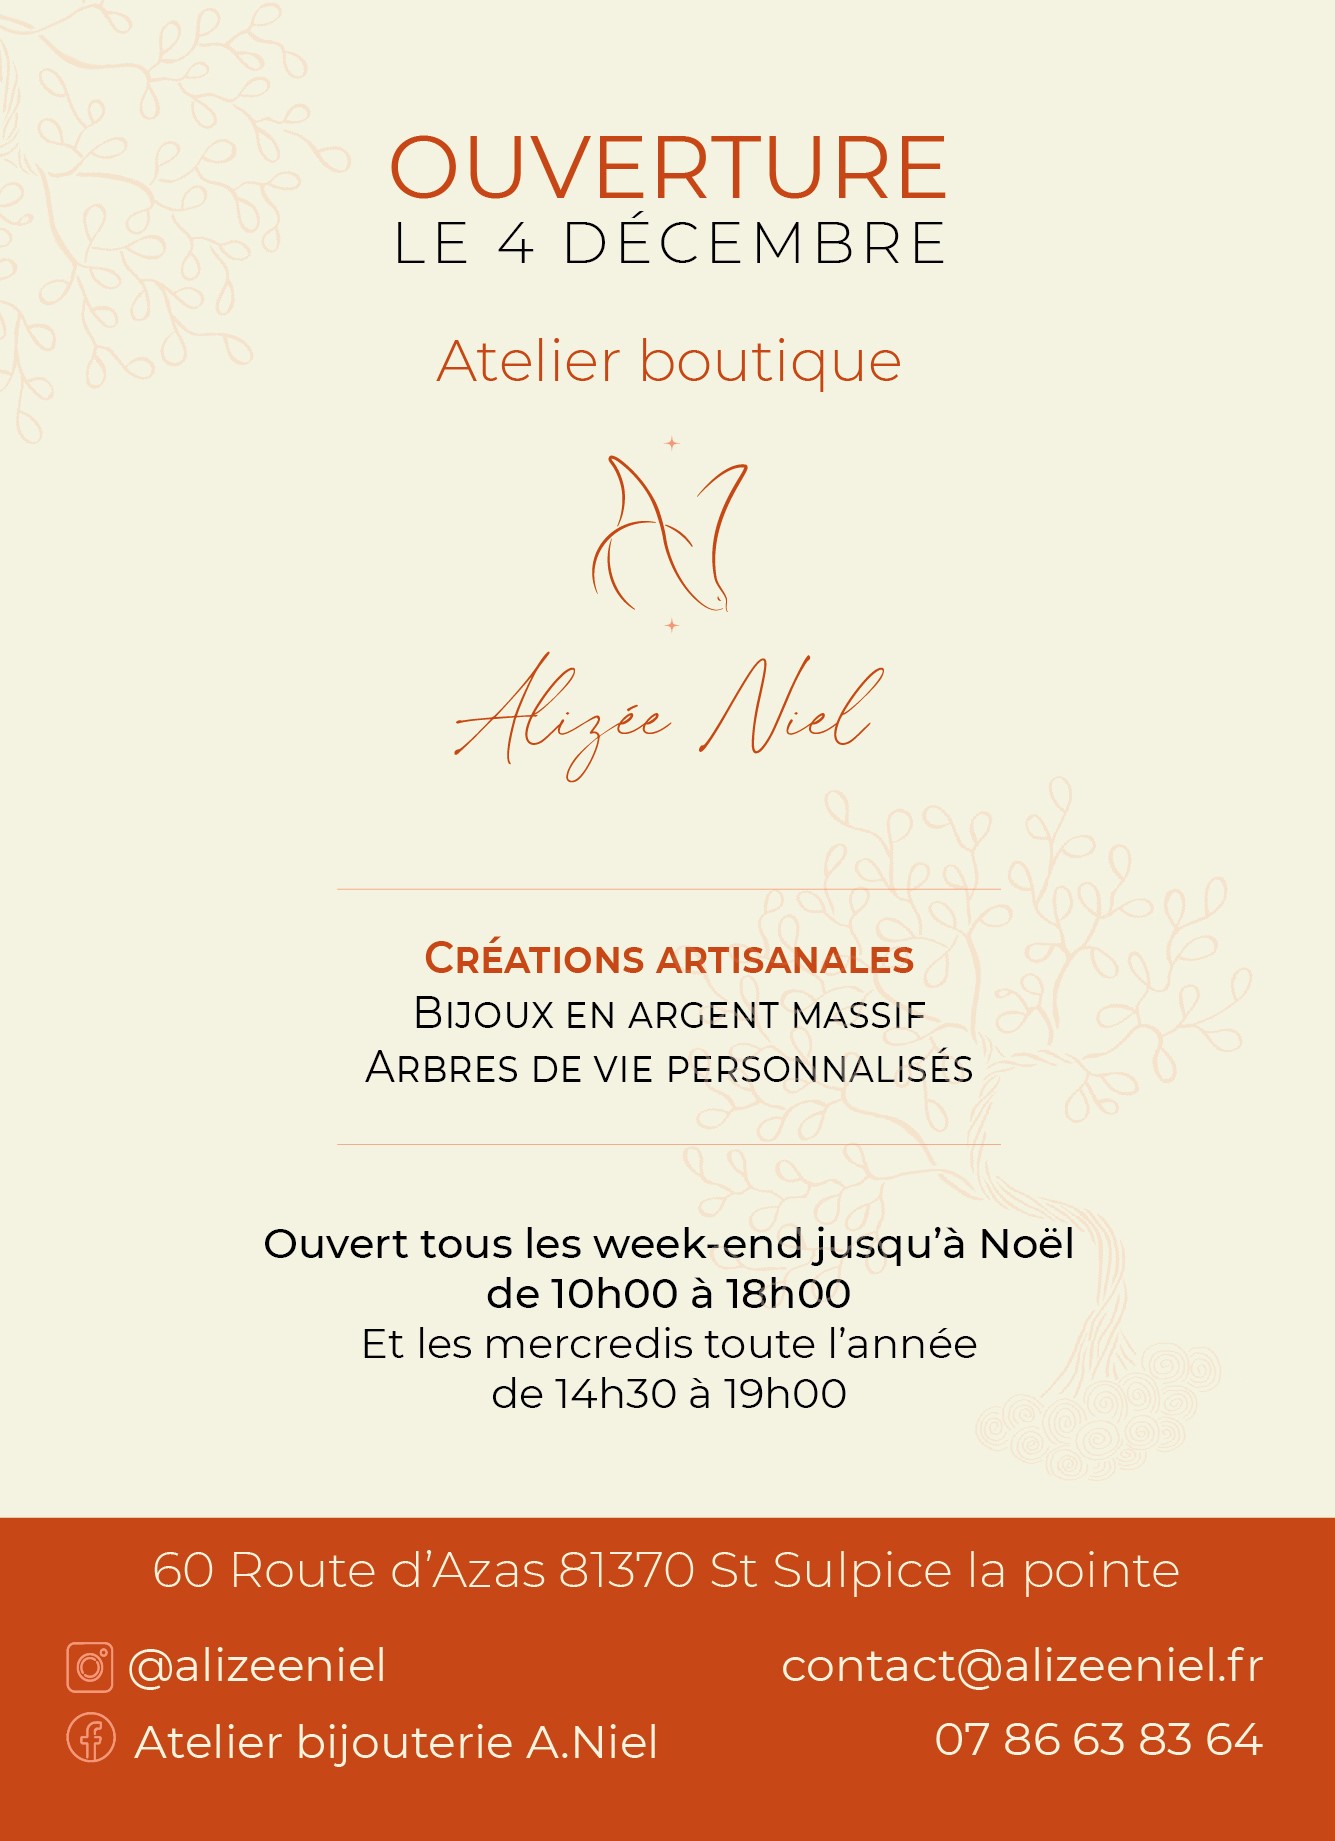 Atelier boutique Alizée Niel